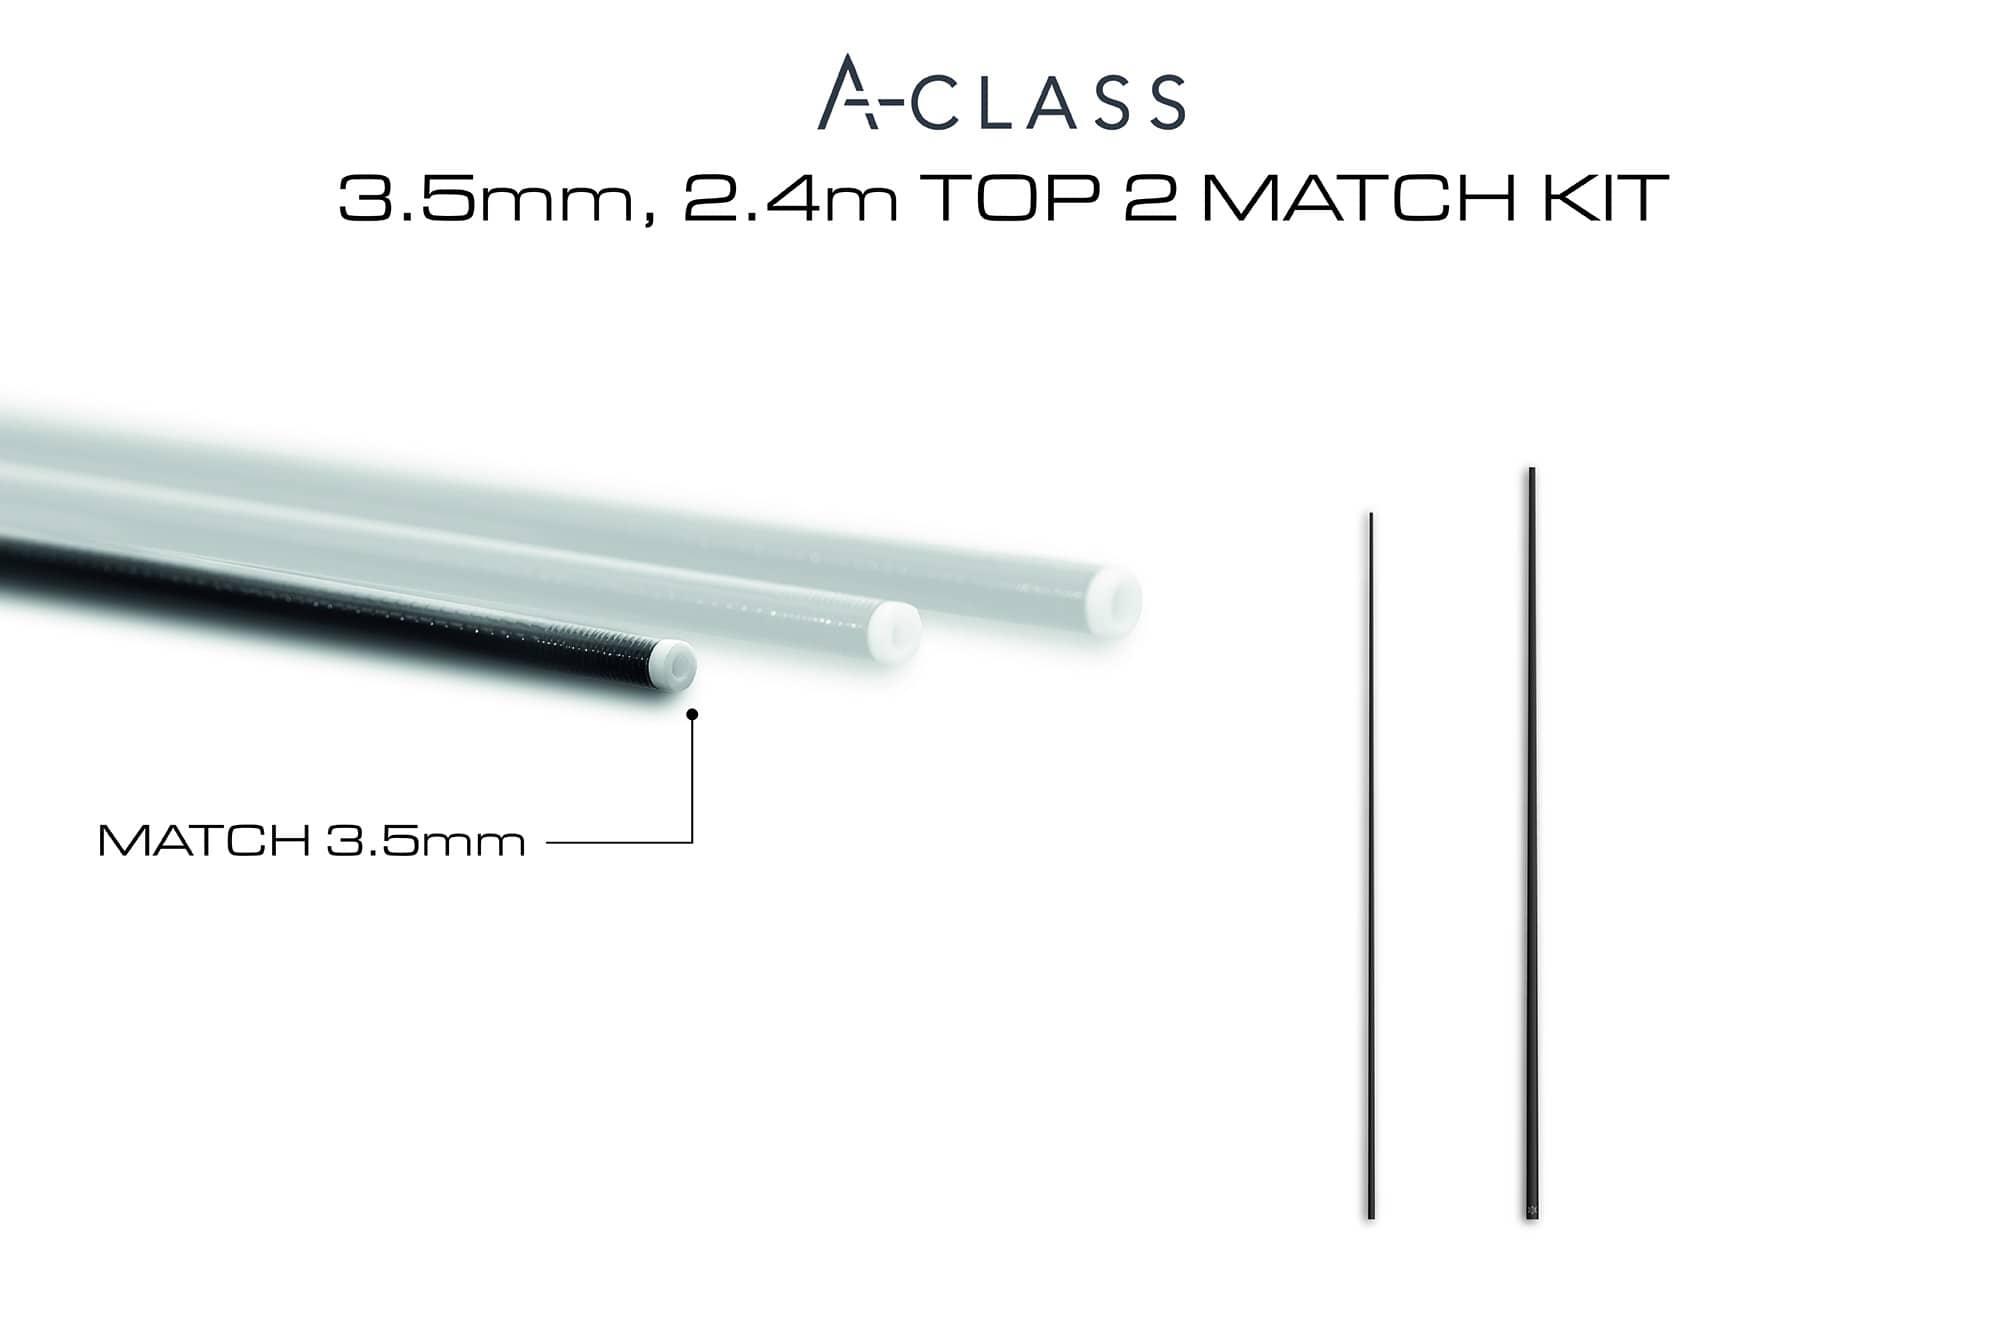 guru a-class top 2 match kit 2.4m 3.5mm